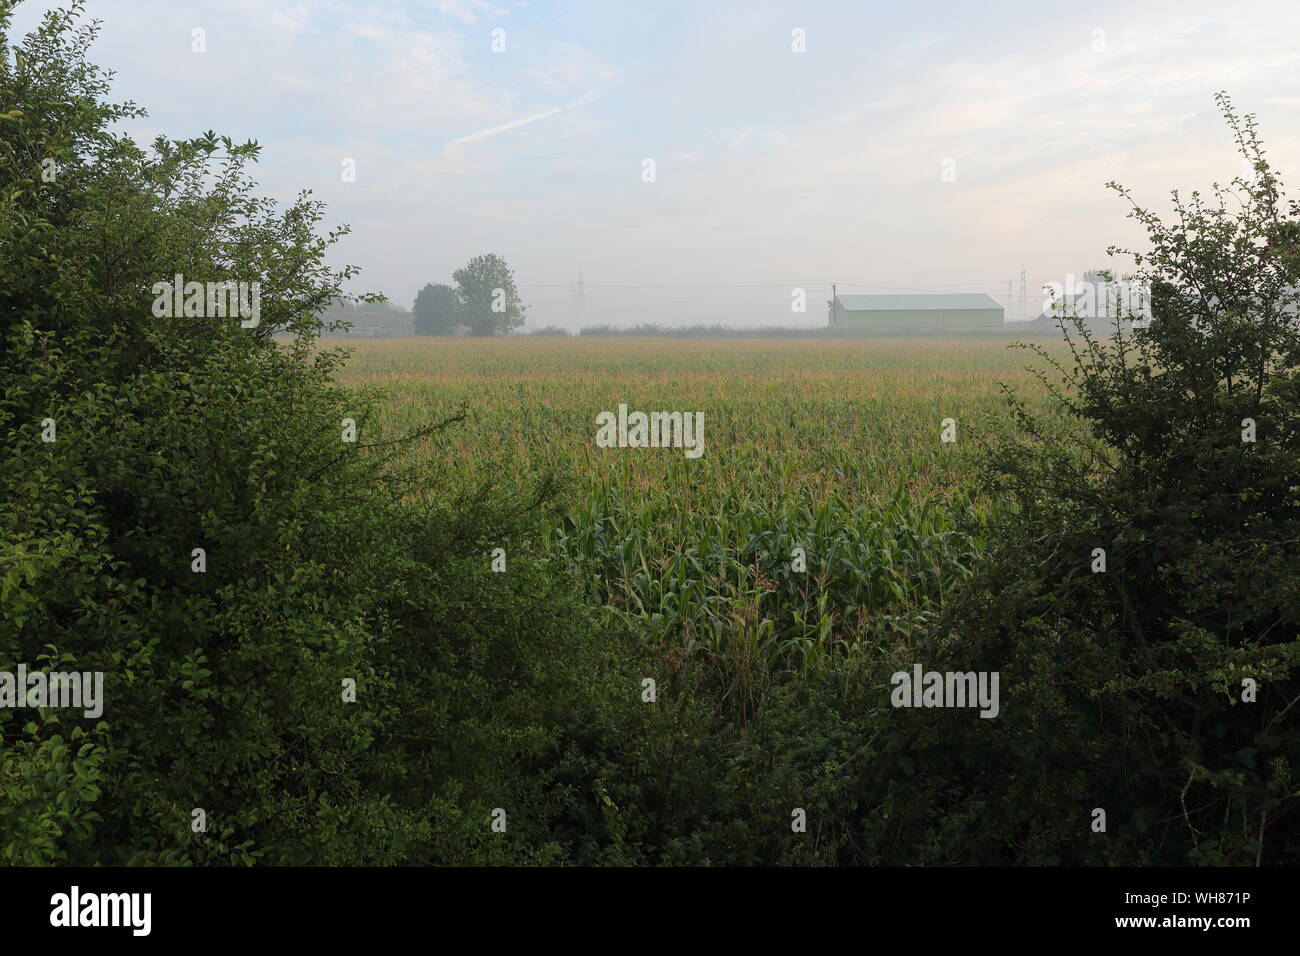 Misty Vista à Winterton montrant une grange dans la brume au-delà d'un champ de maïs Banque D'Images